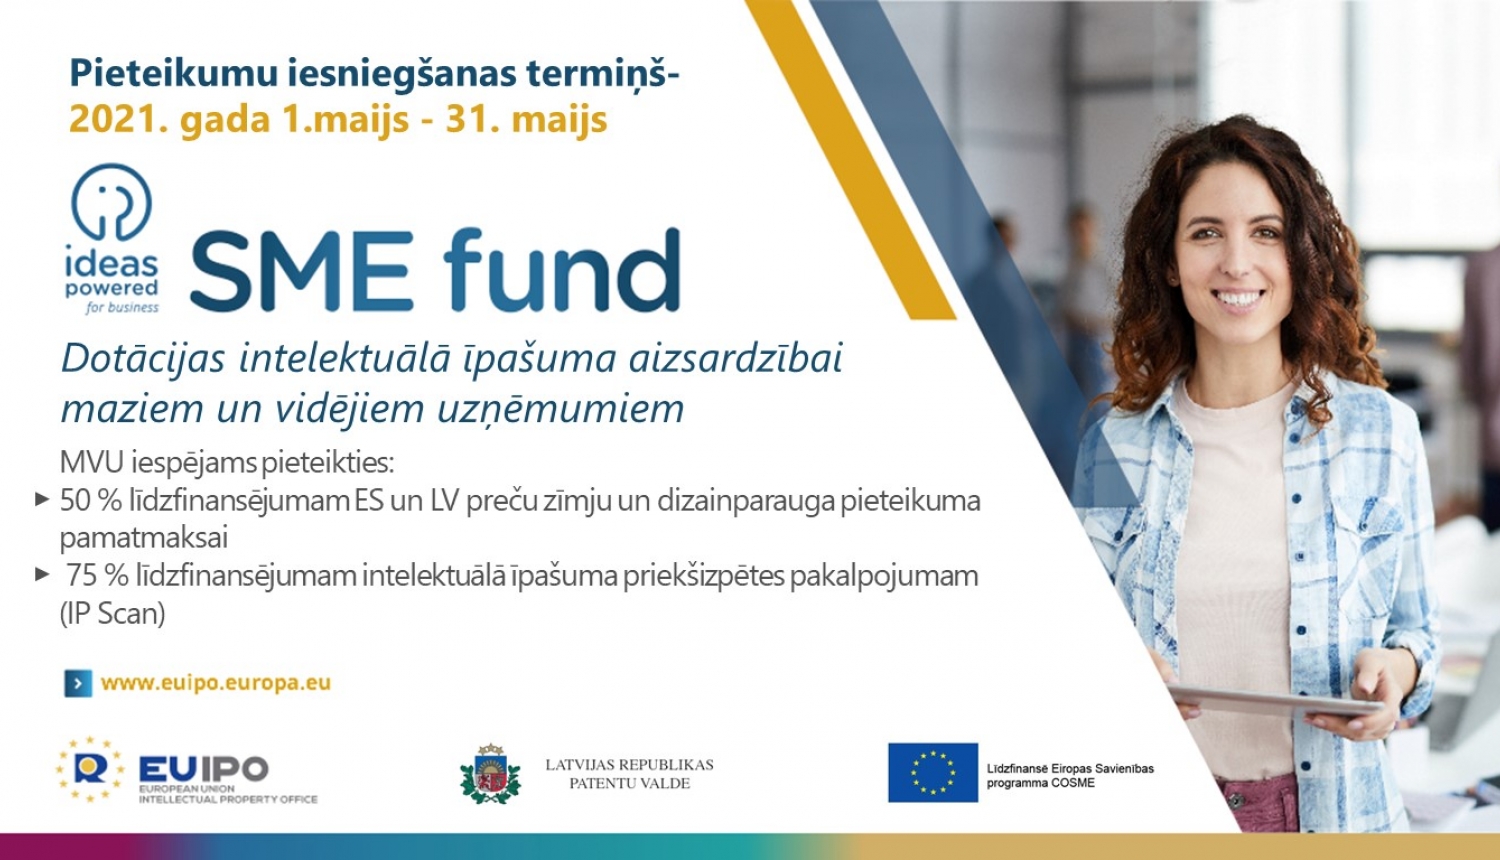 SME fund pieteikšanās 1.-31. maijs. Dotācijas maziem un vidējiem uzņēmumiem intelektuālā īpašuma jomā.